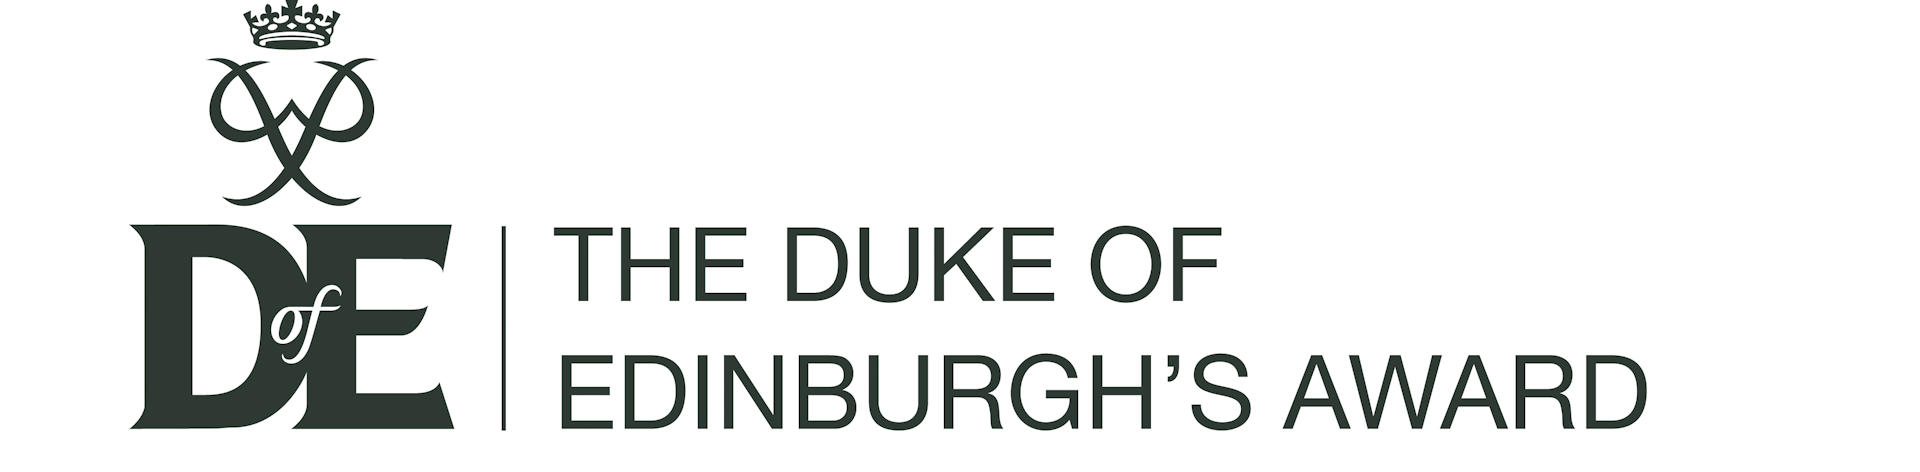 Duke-of-edinburgh